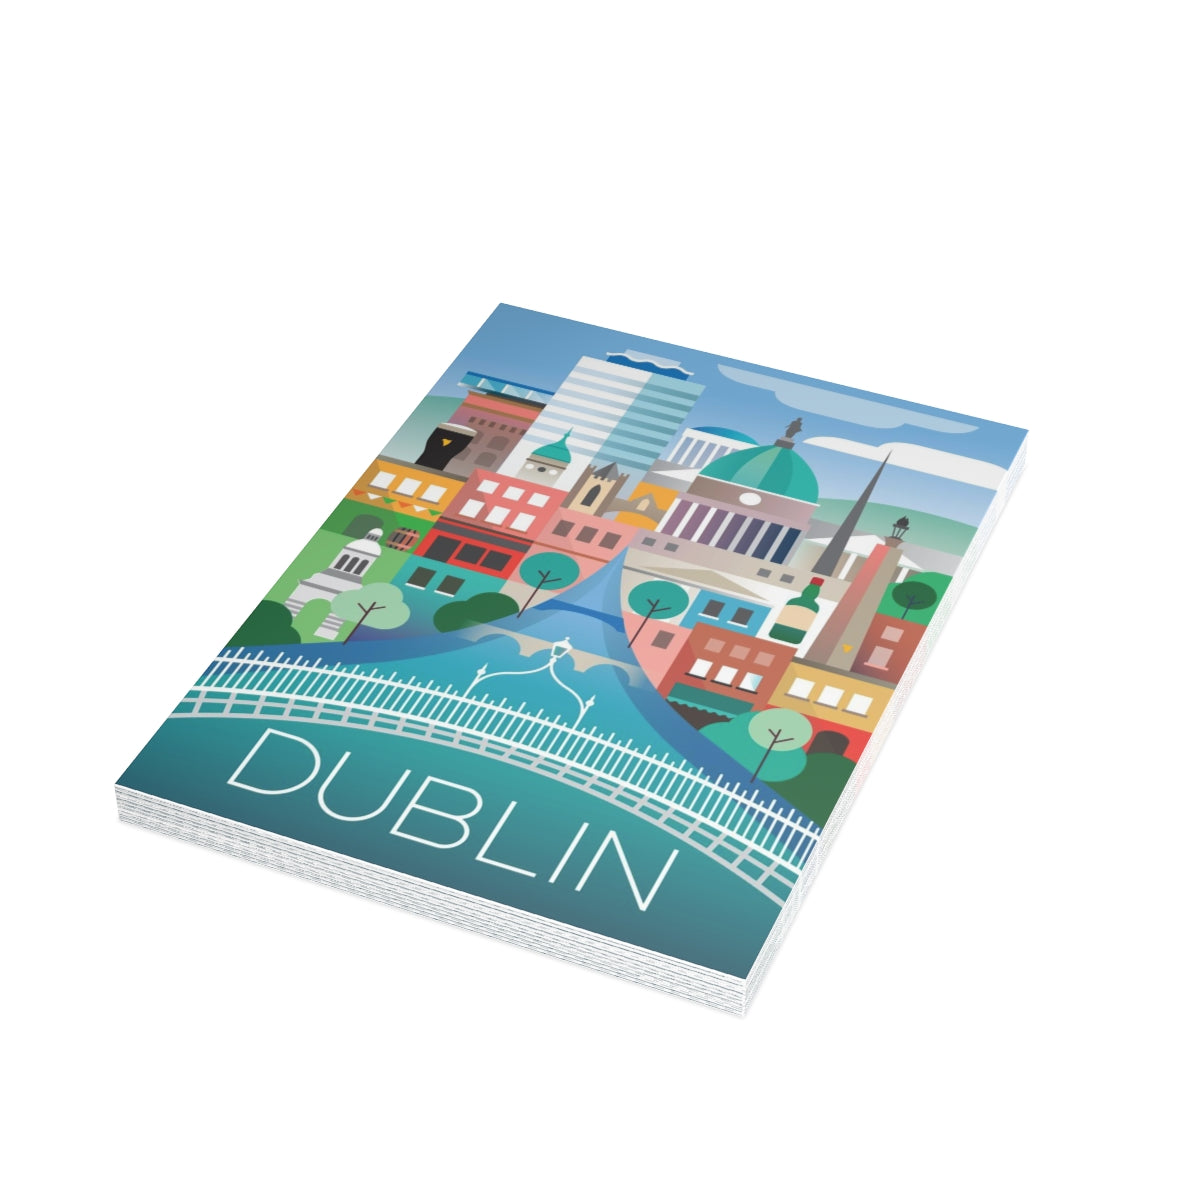 Cartes mates pliées Dublin + enveloppes (10 pièces)